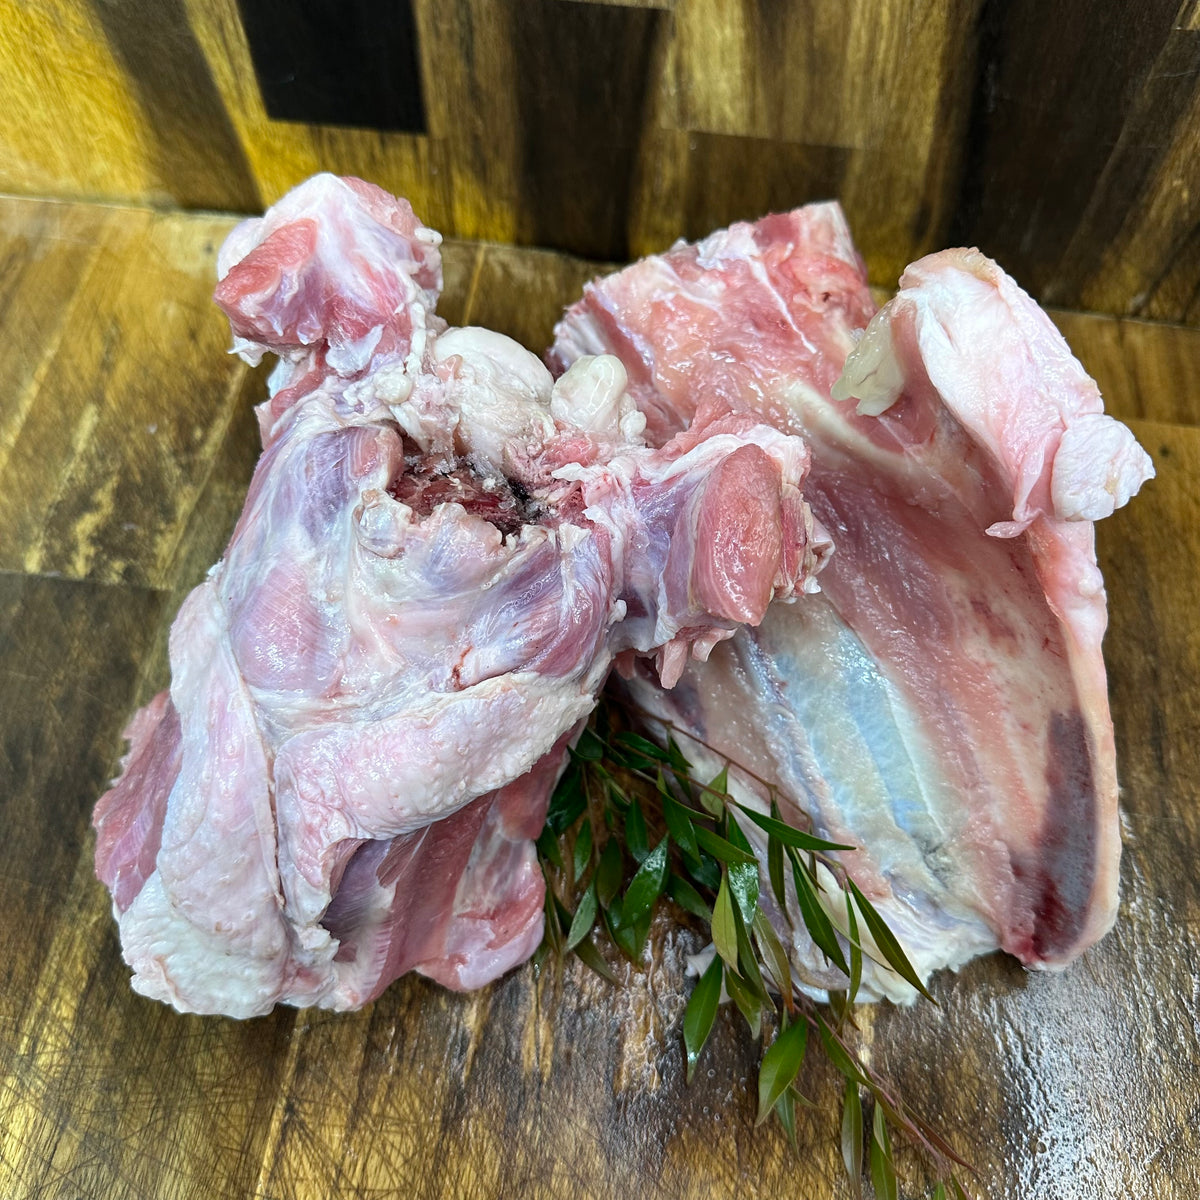 Turkey Meaty Breast Bones (approx. 1kg)